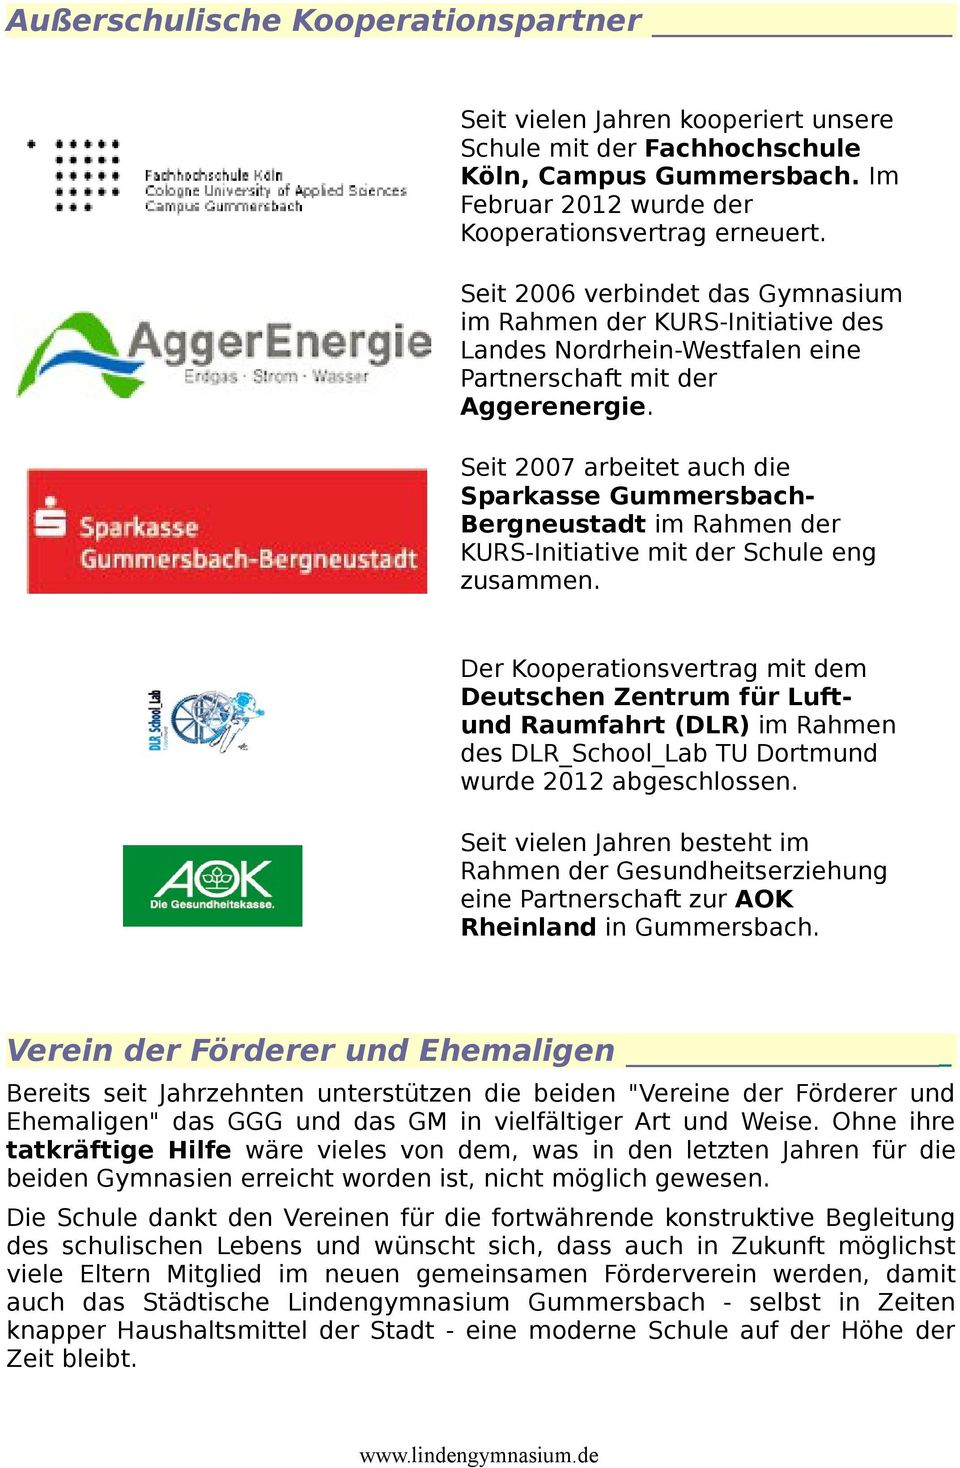 Seit 2007 arbeitet auch die Sparkasse GummersbachBergneustadt im Rahmen der KURS-Initiative mit der Schule eng zusammen.